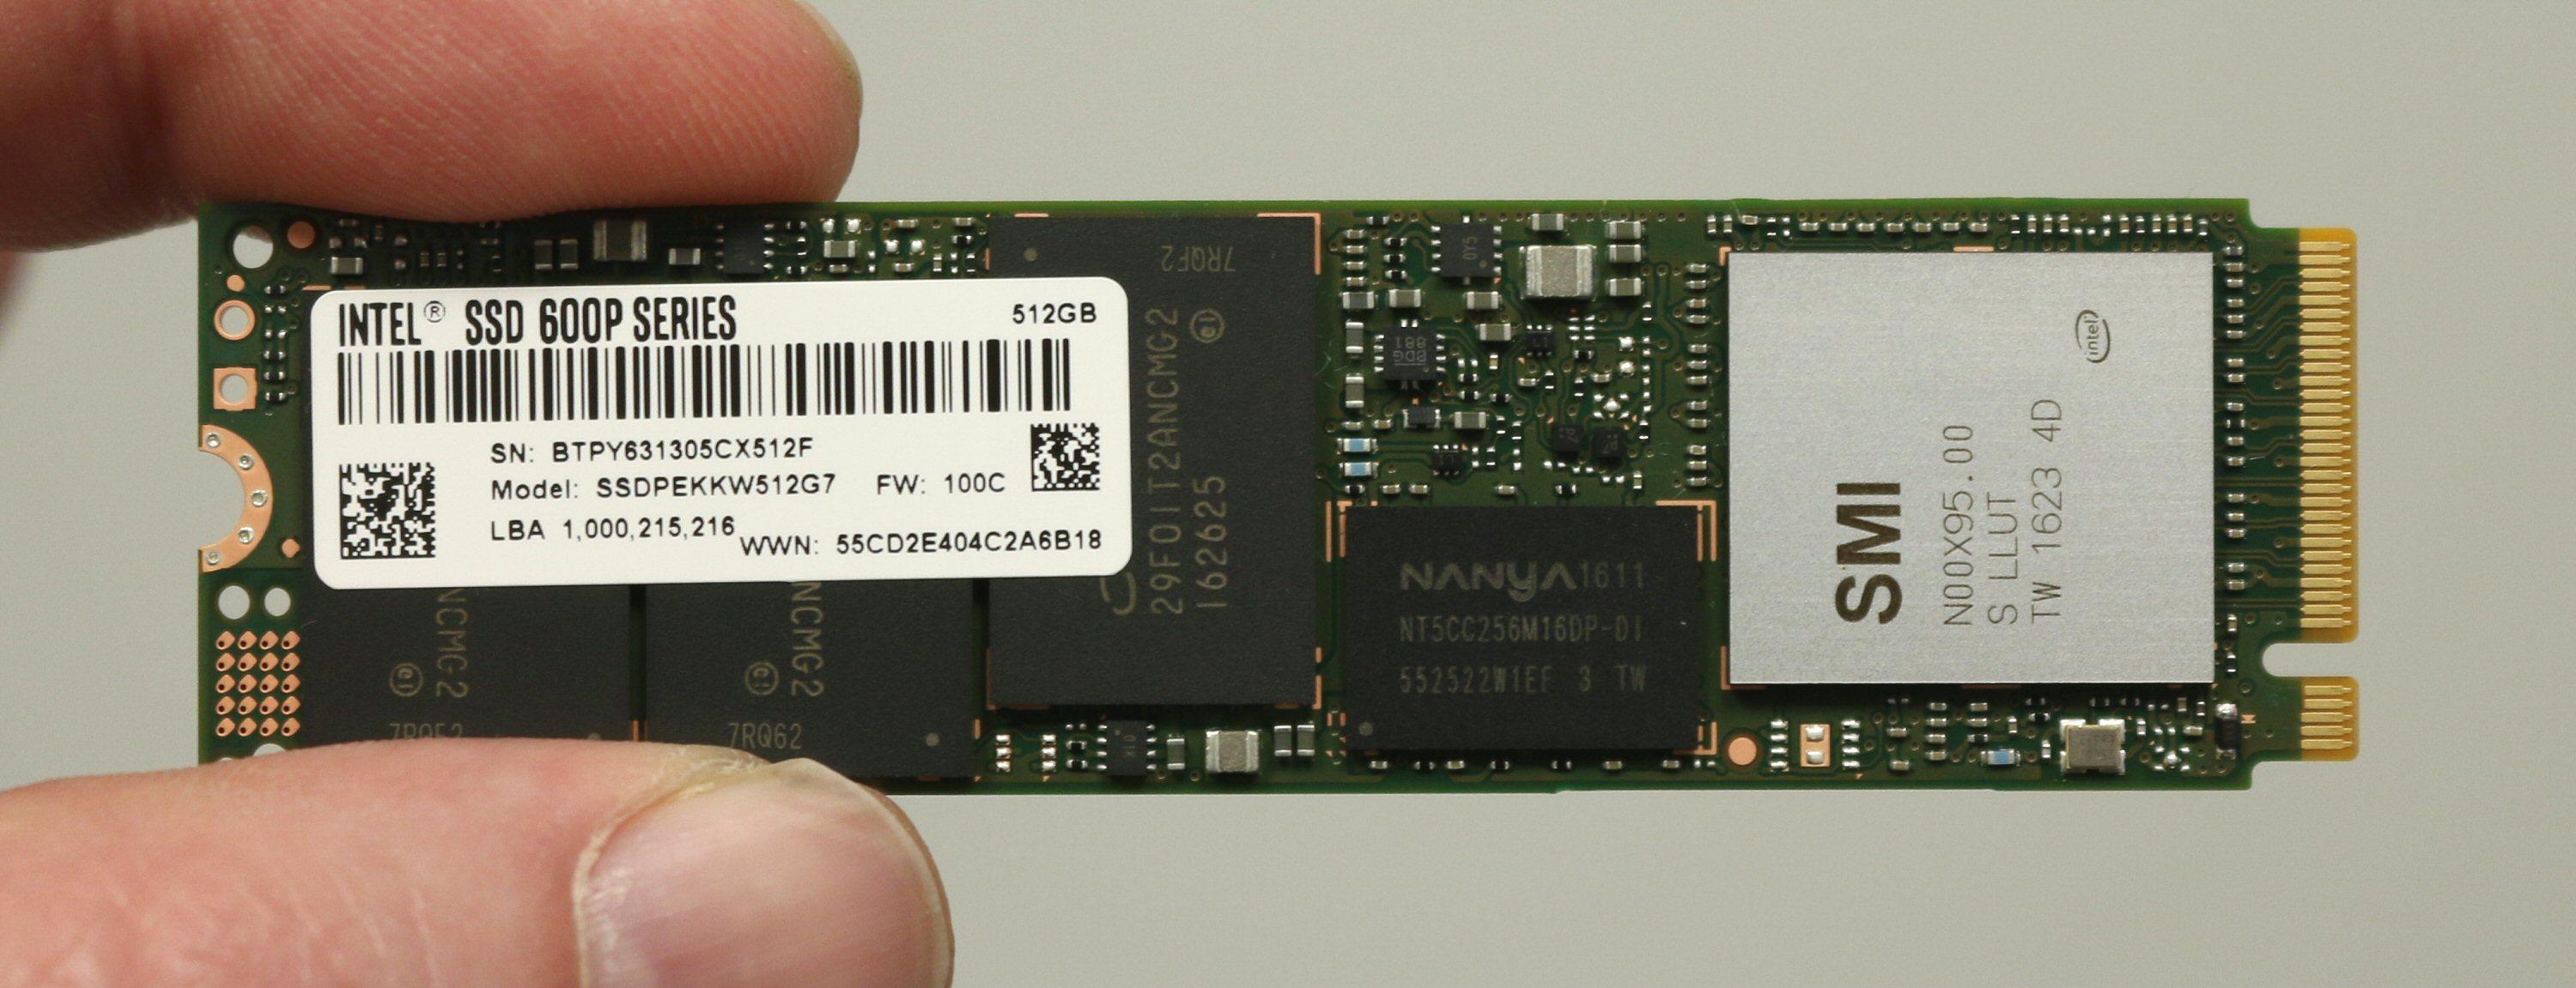 Intel SSD 600p Series bruker M.2-formfaktoren, noe som gjør den ekstra liten.